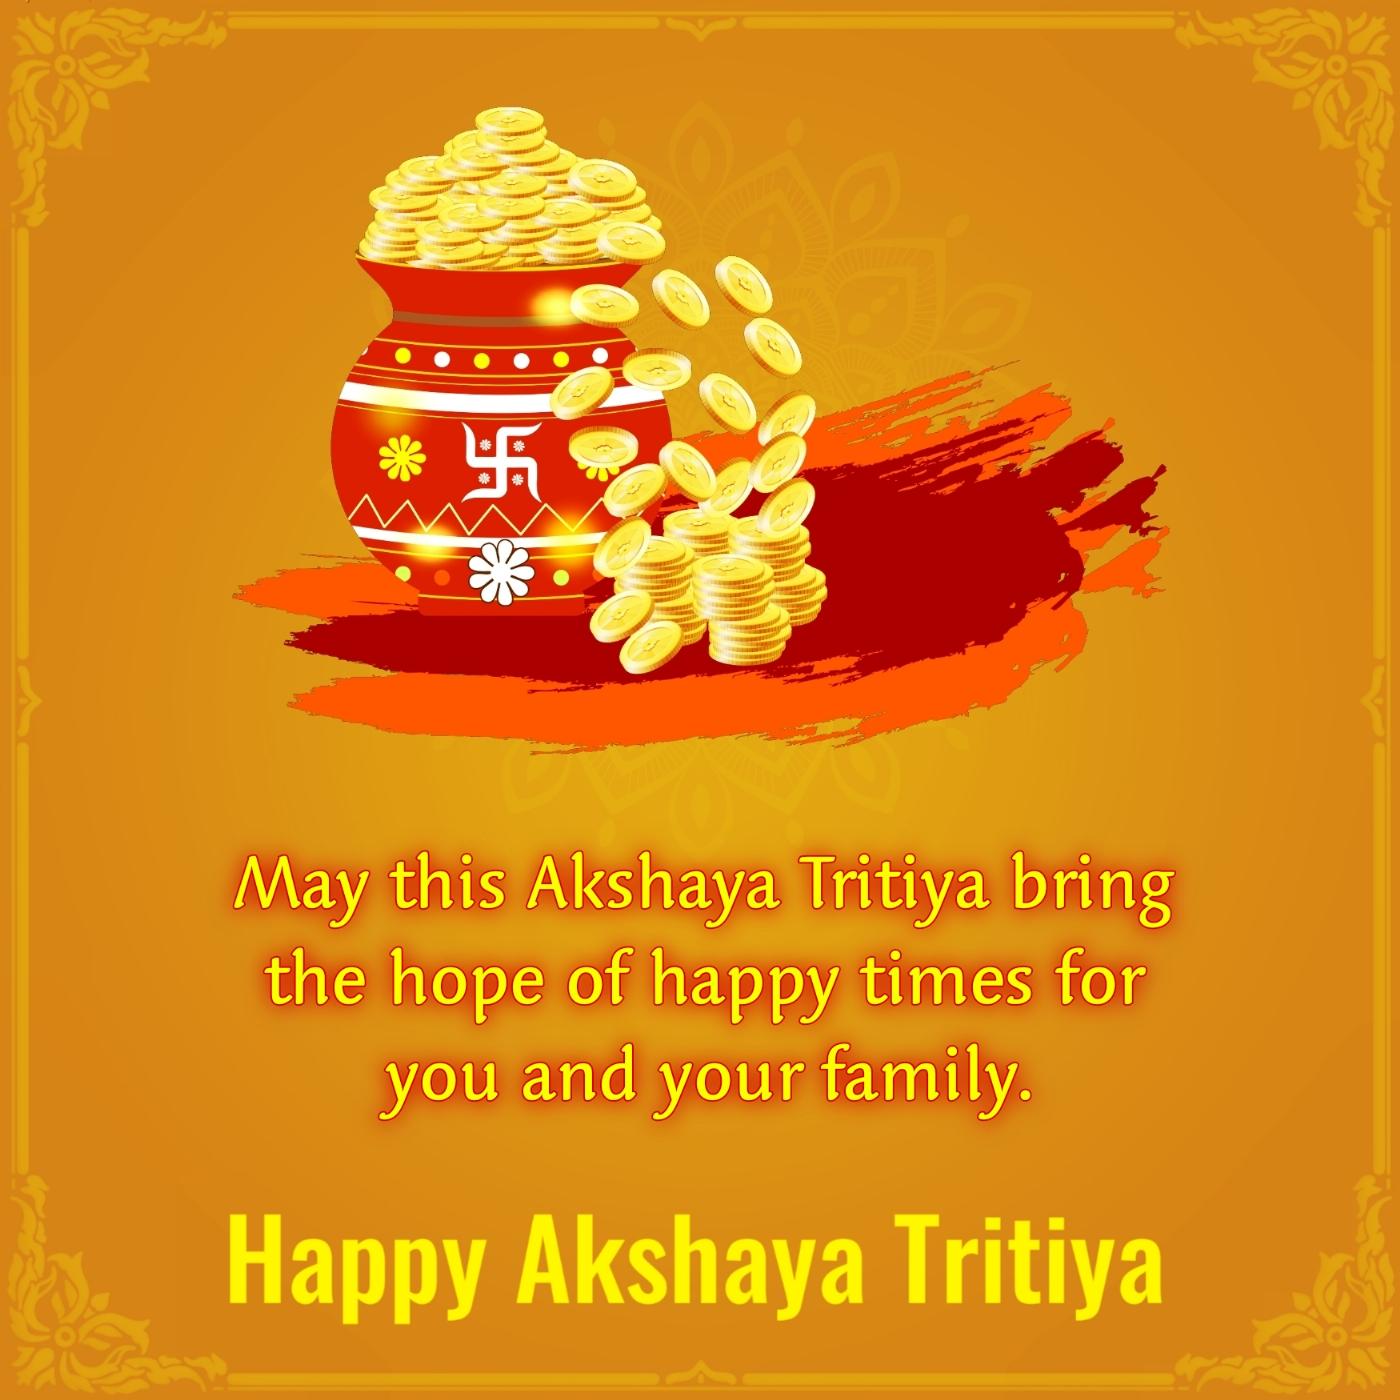 May this Akshaya Tritiya bring the hope of happy times